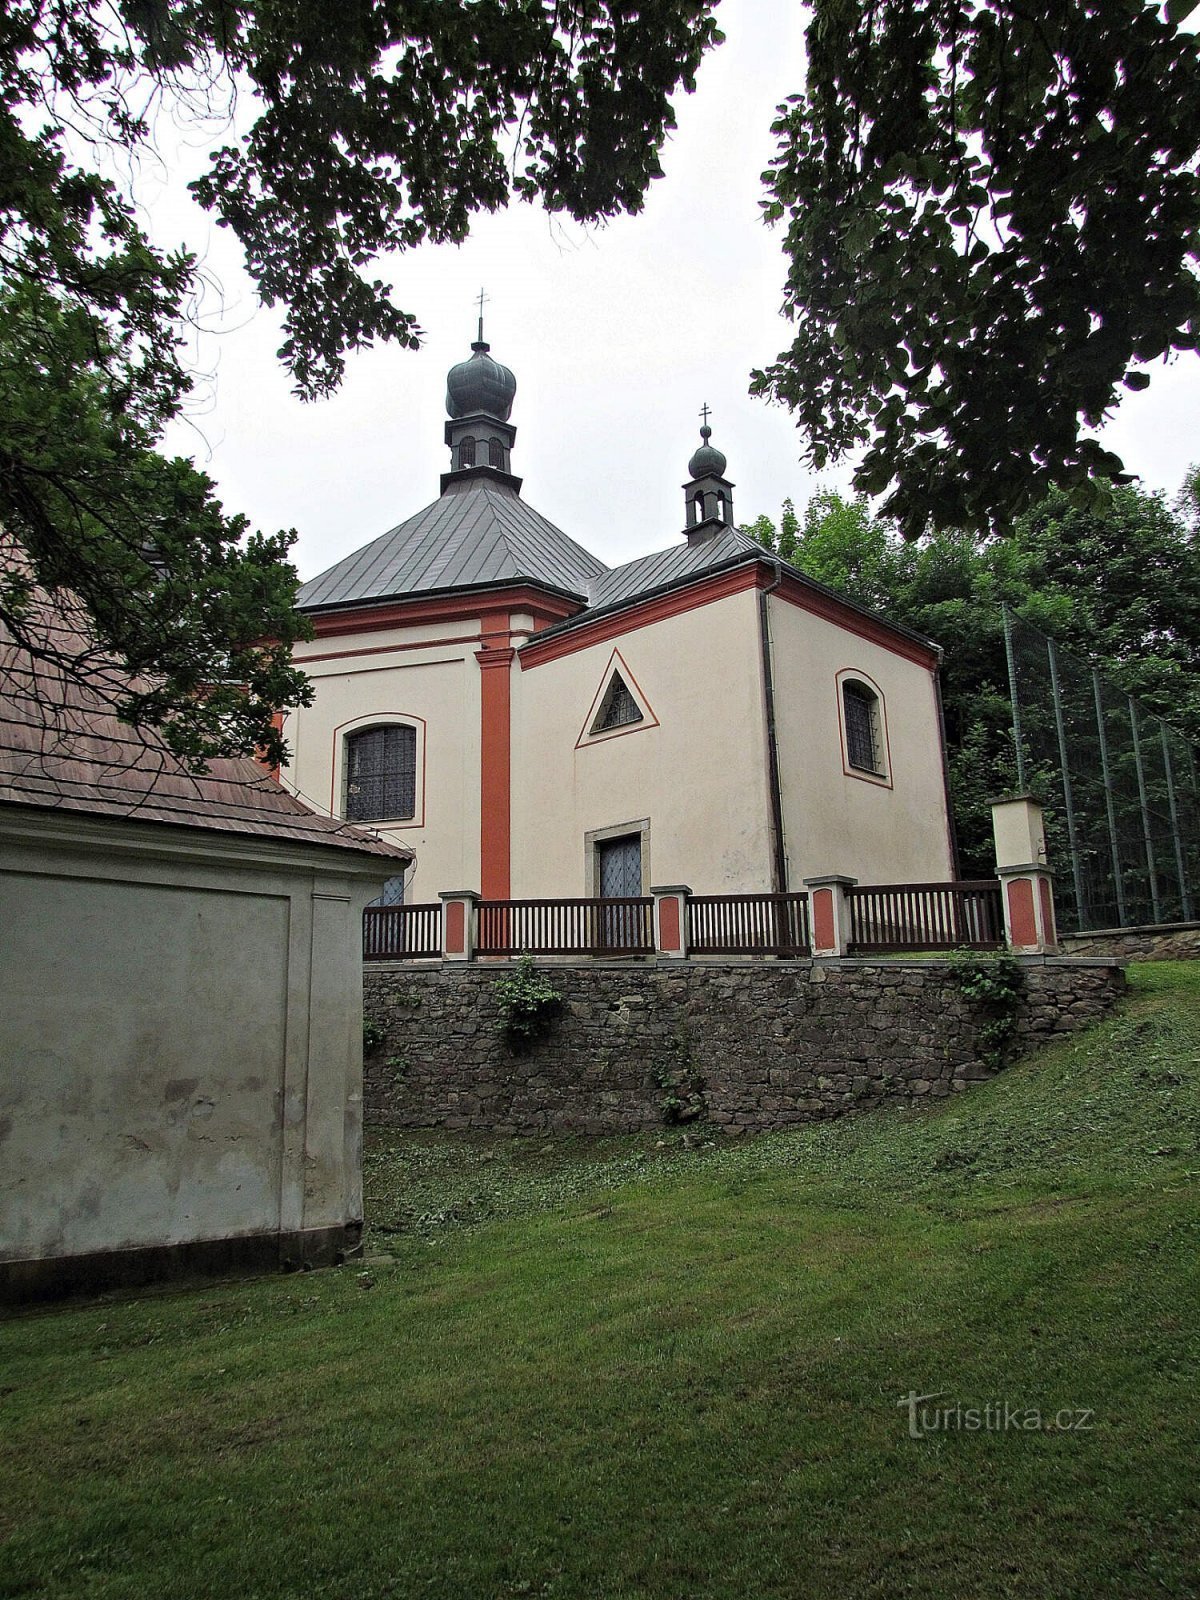 Havlíčkobrod-kathedraal van de Heilige Drie-eenheid